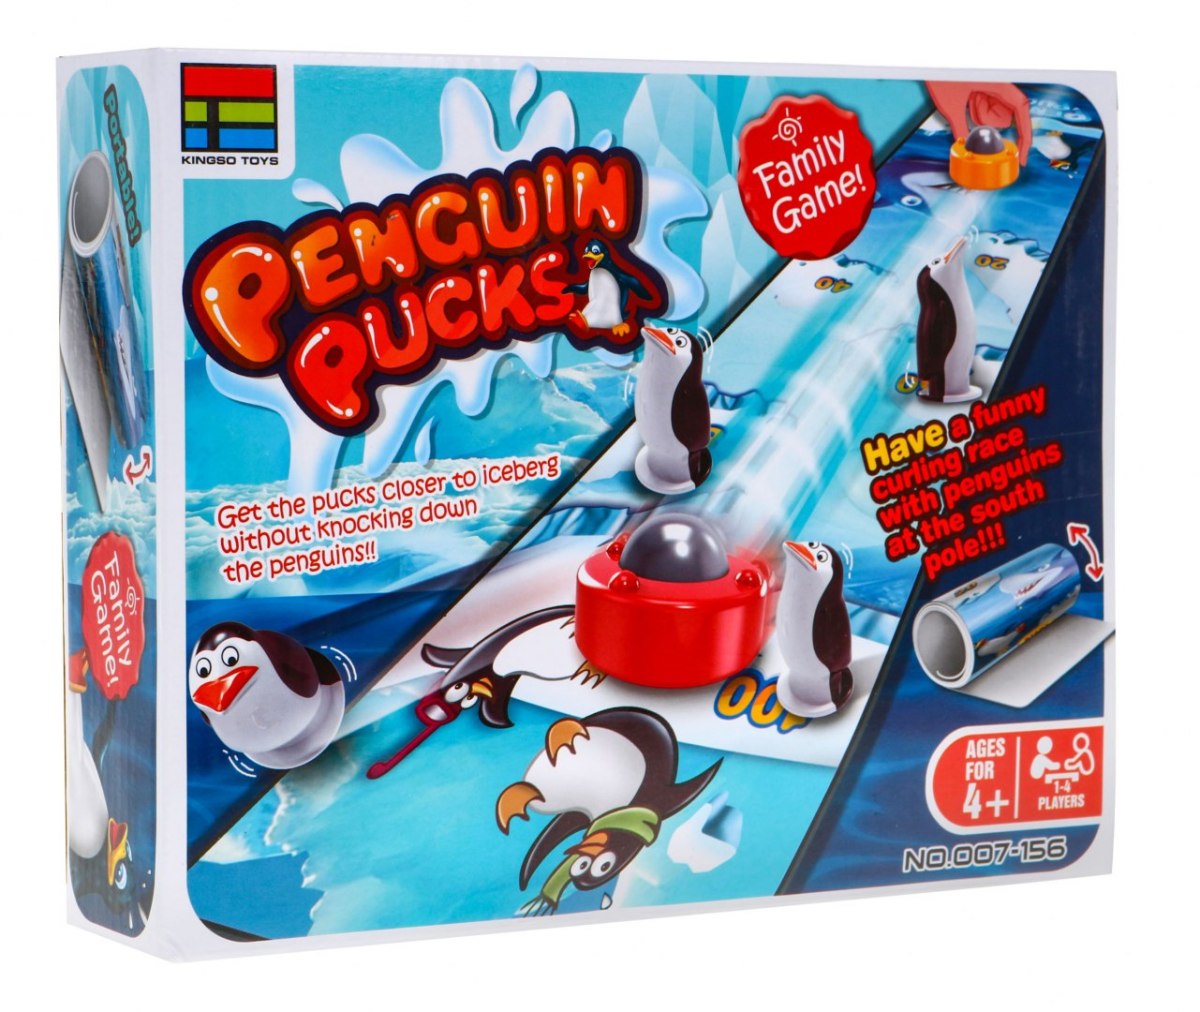 Gra zręcznościowa dla dzieci "Curling z Pingwinami"